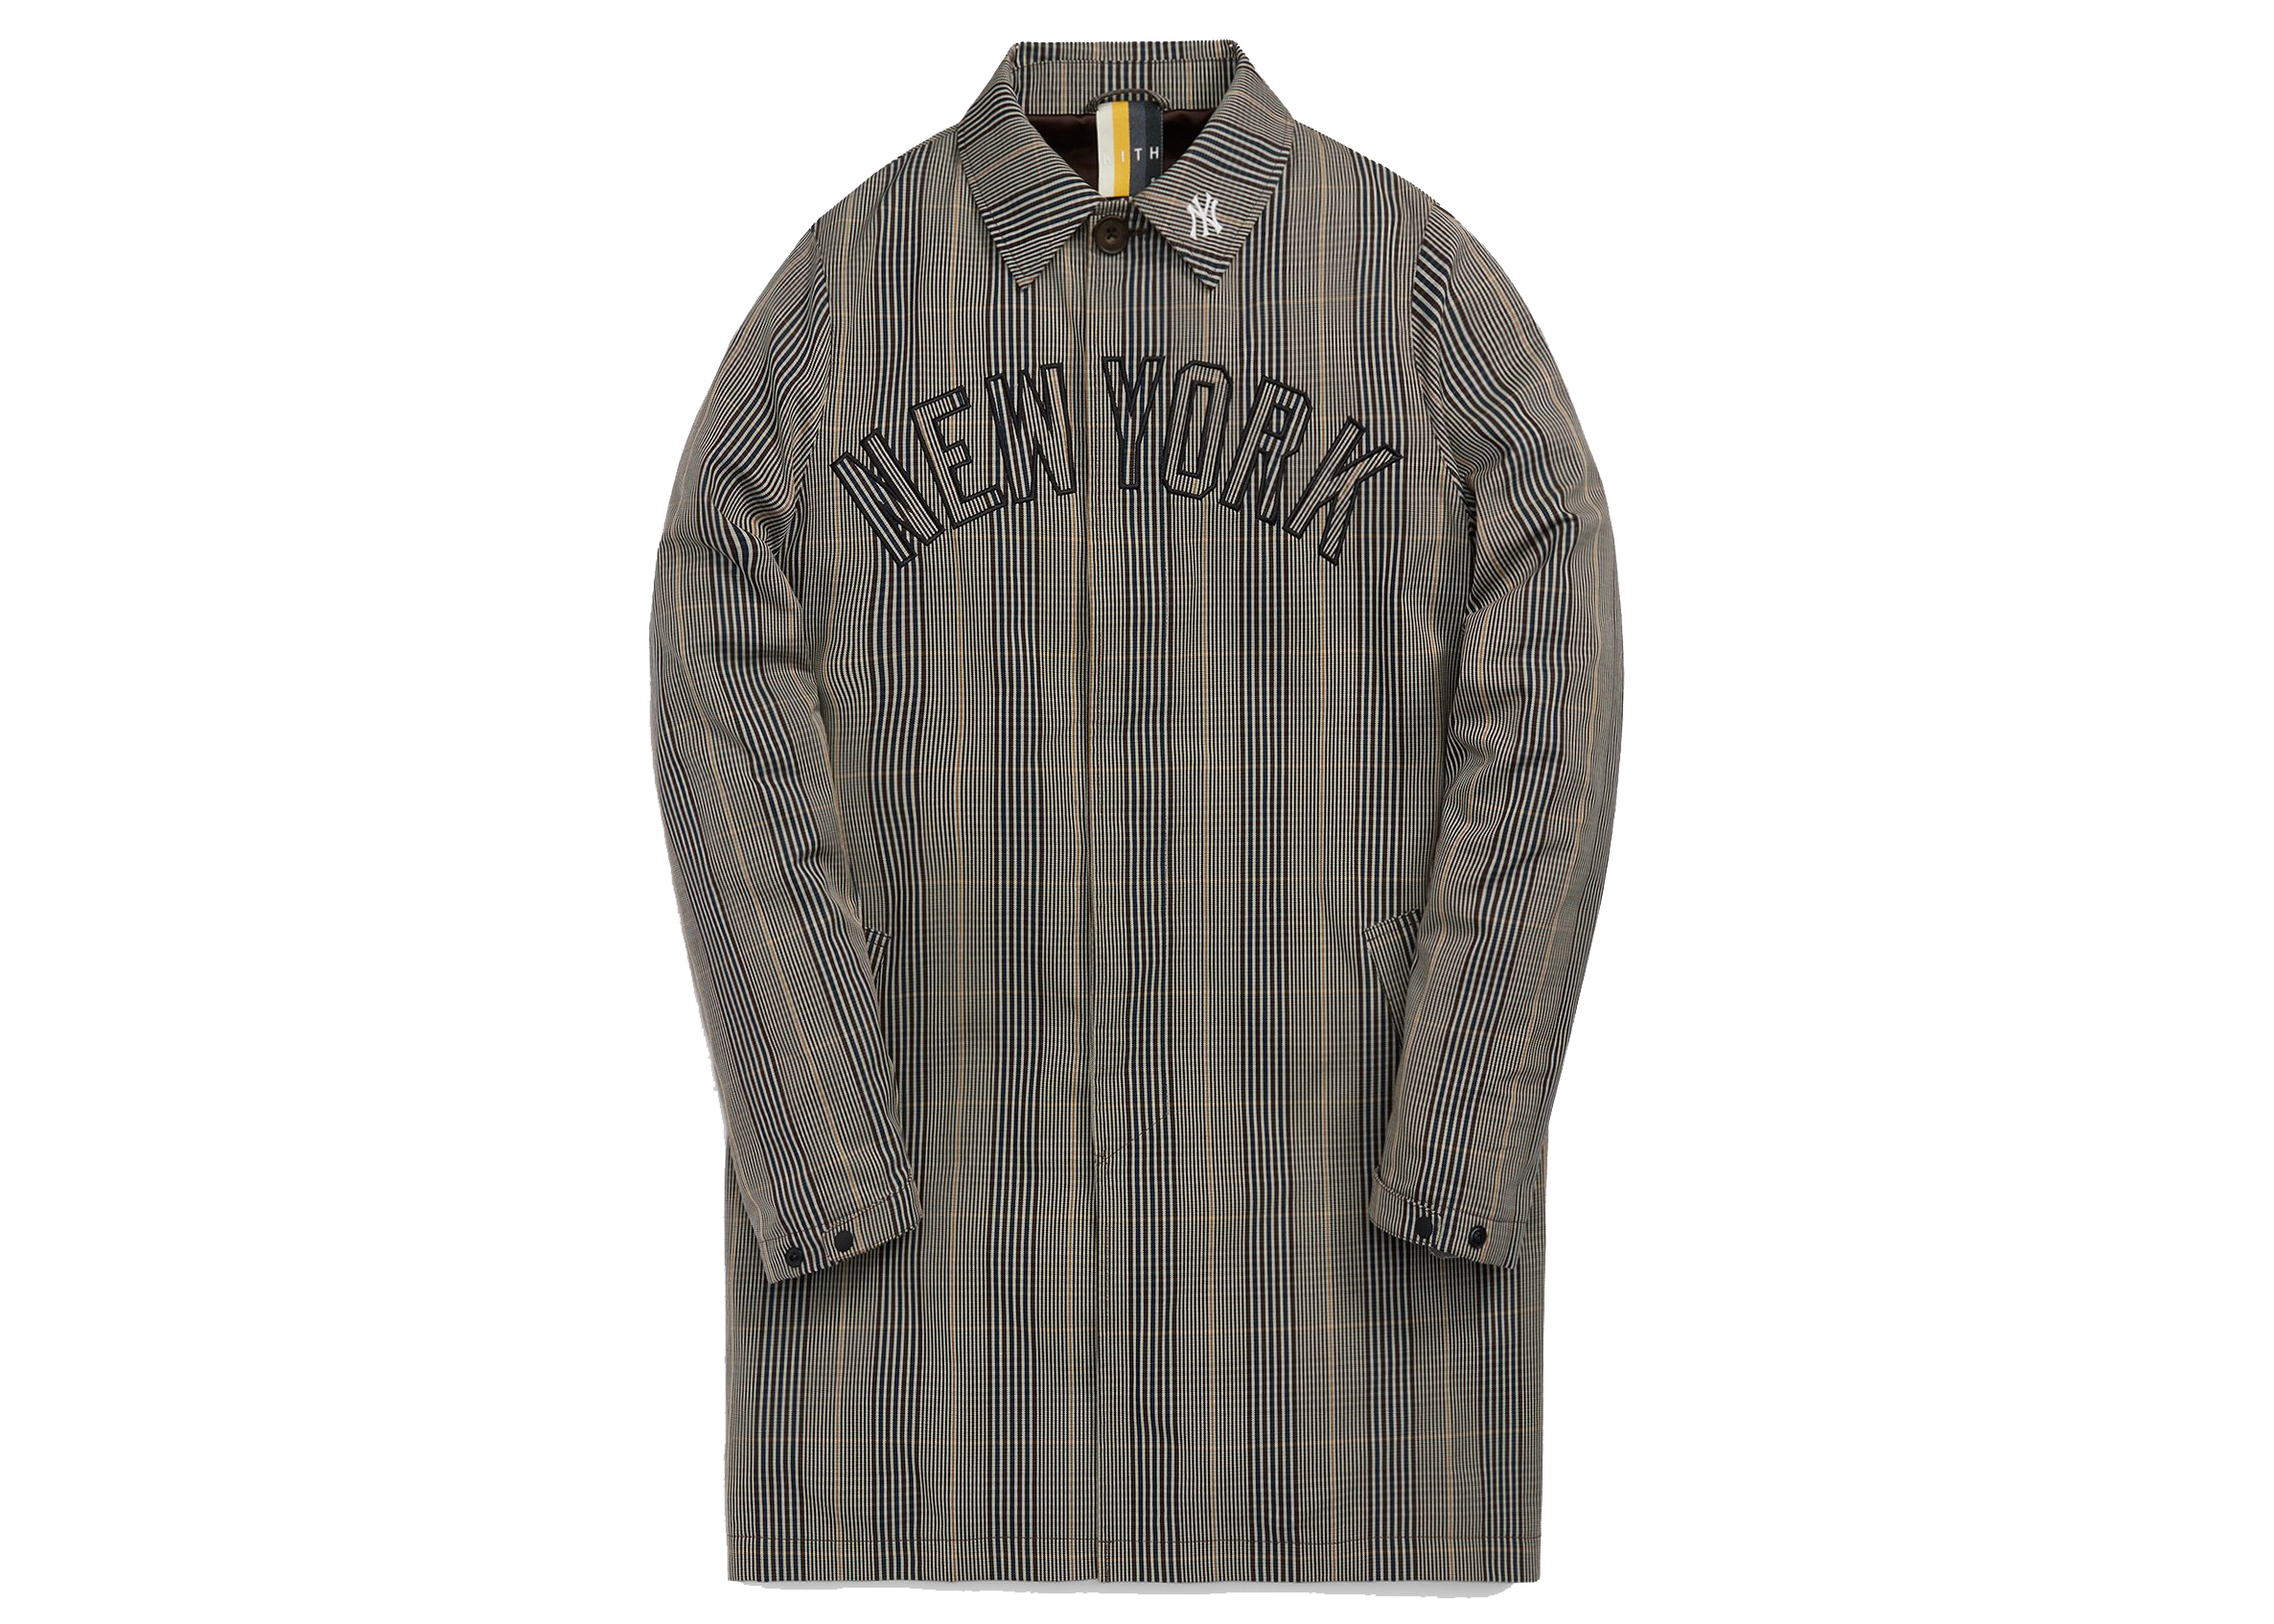 Kith MLB for New York Yankees Wool Bomber Jacket White Men's 